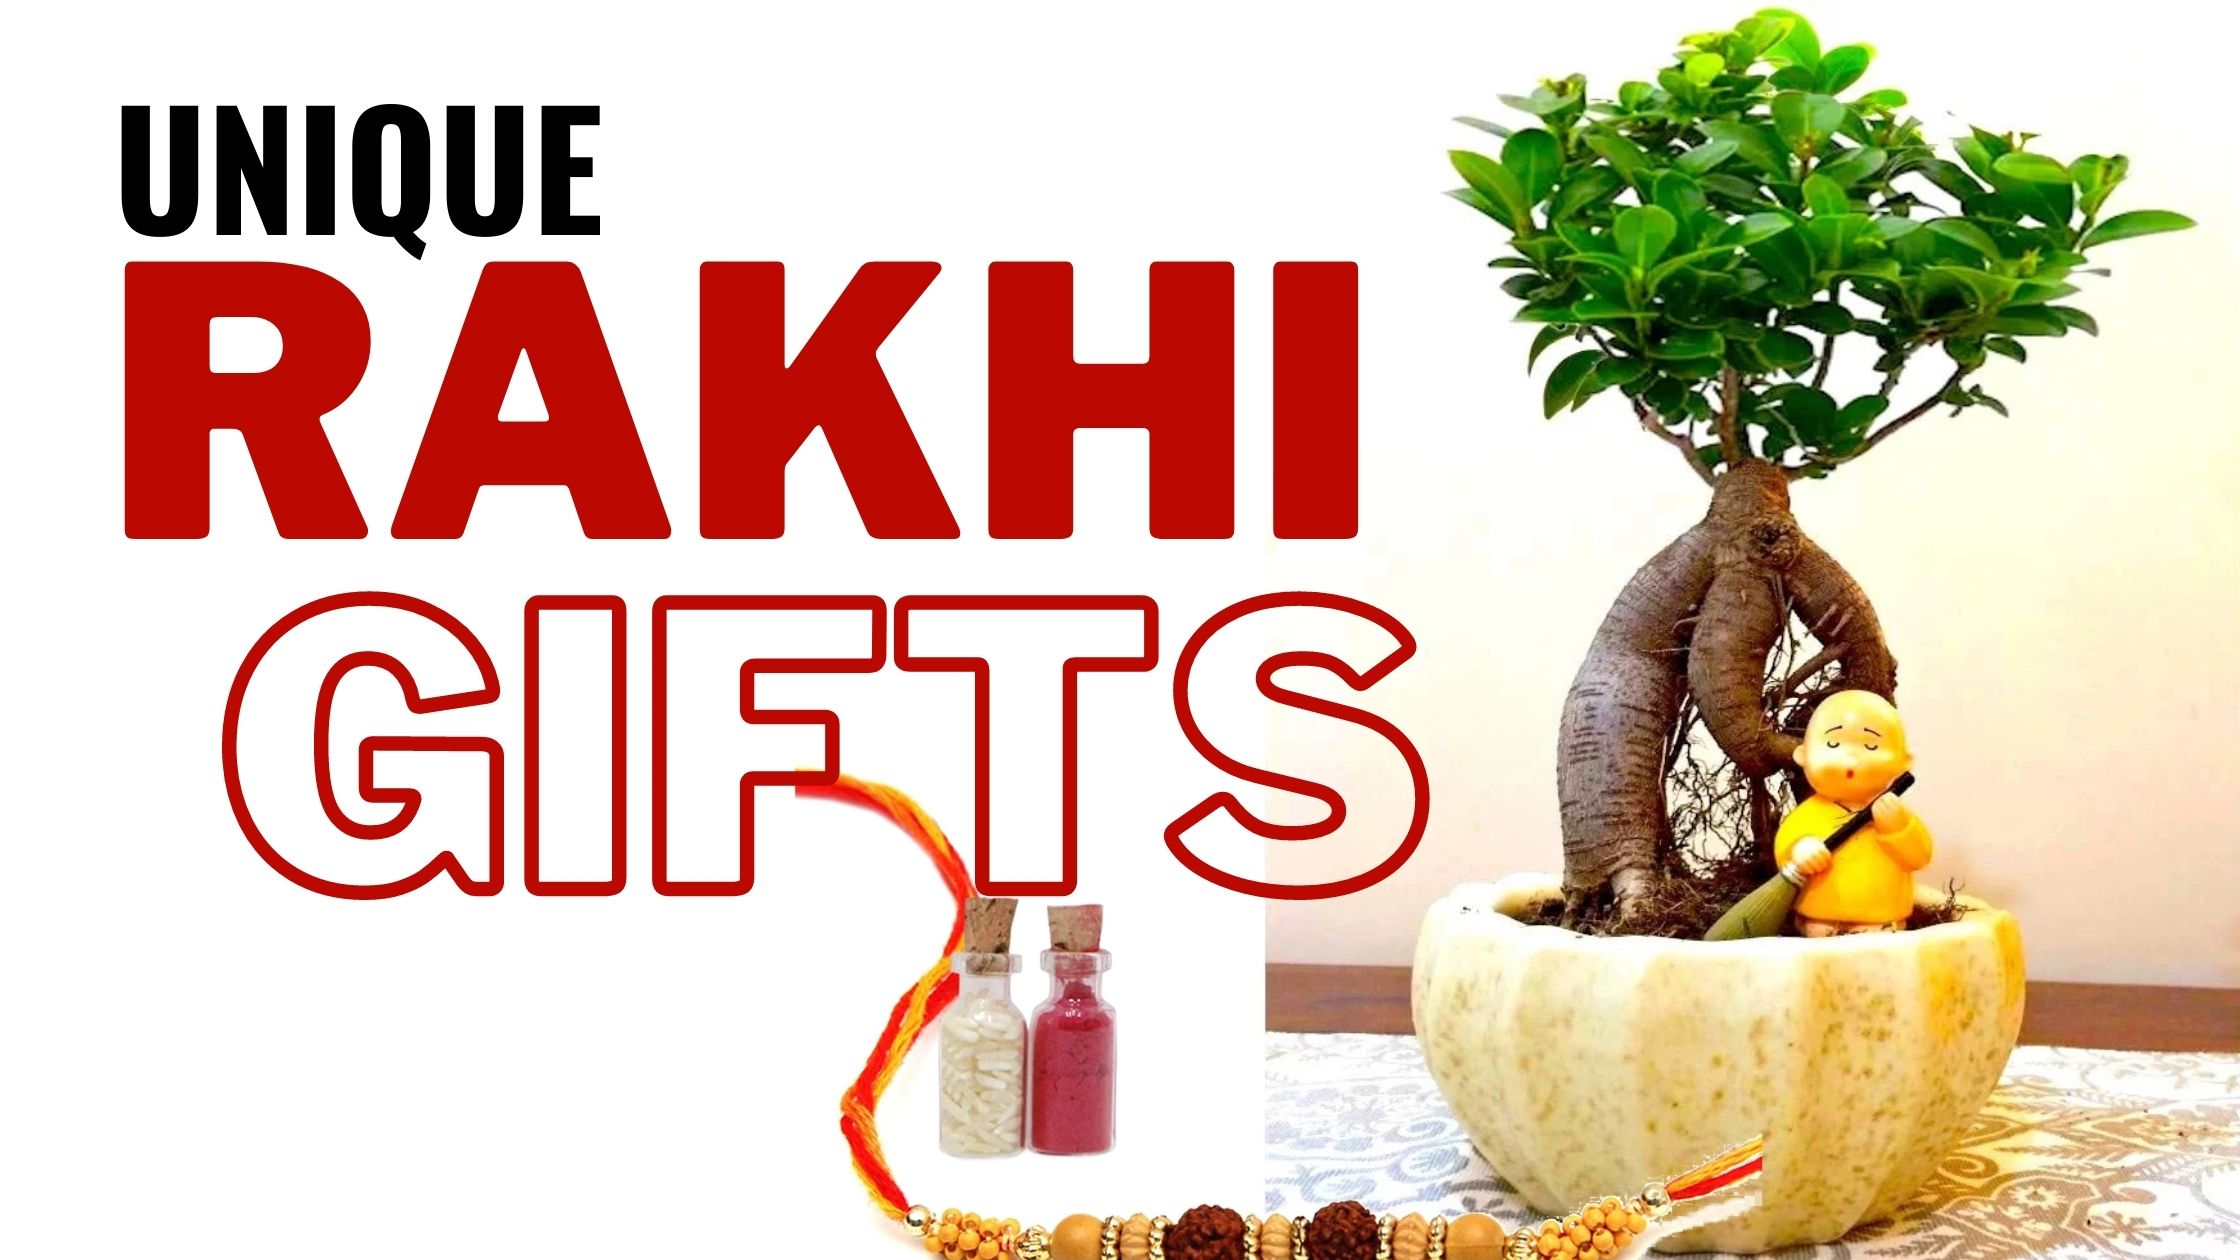 Rakhi Gift Ideas - Raksha Bandhan Gift Idea for Brother | GiftaLove